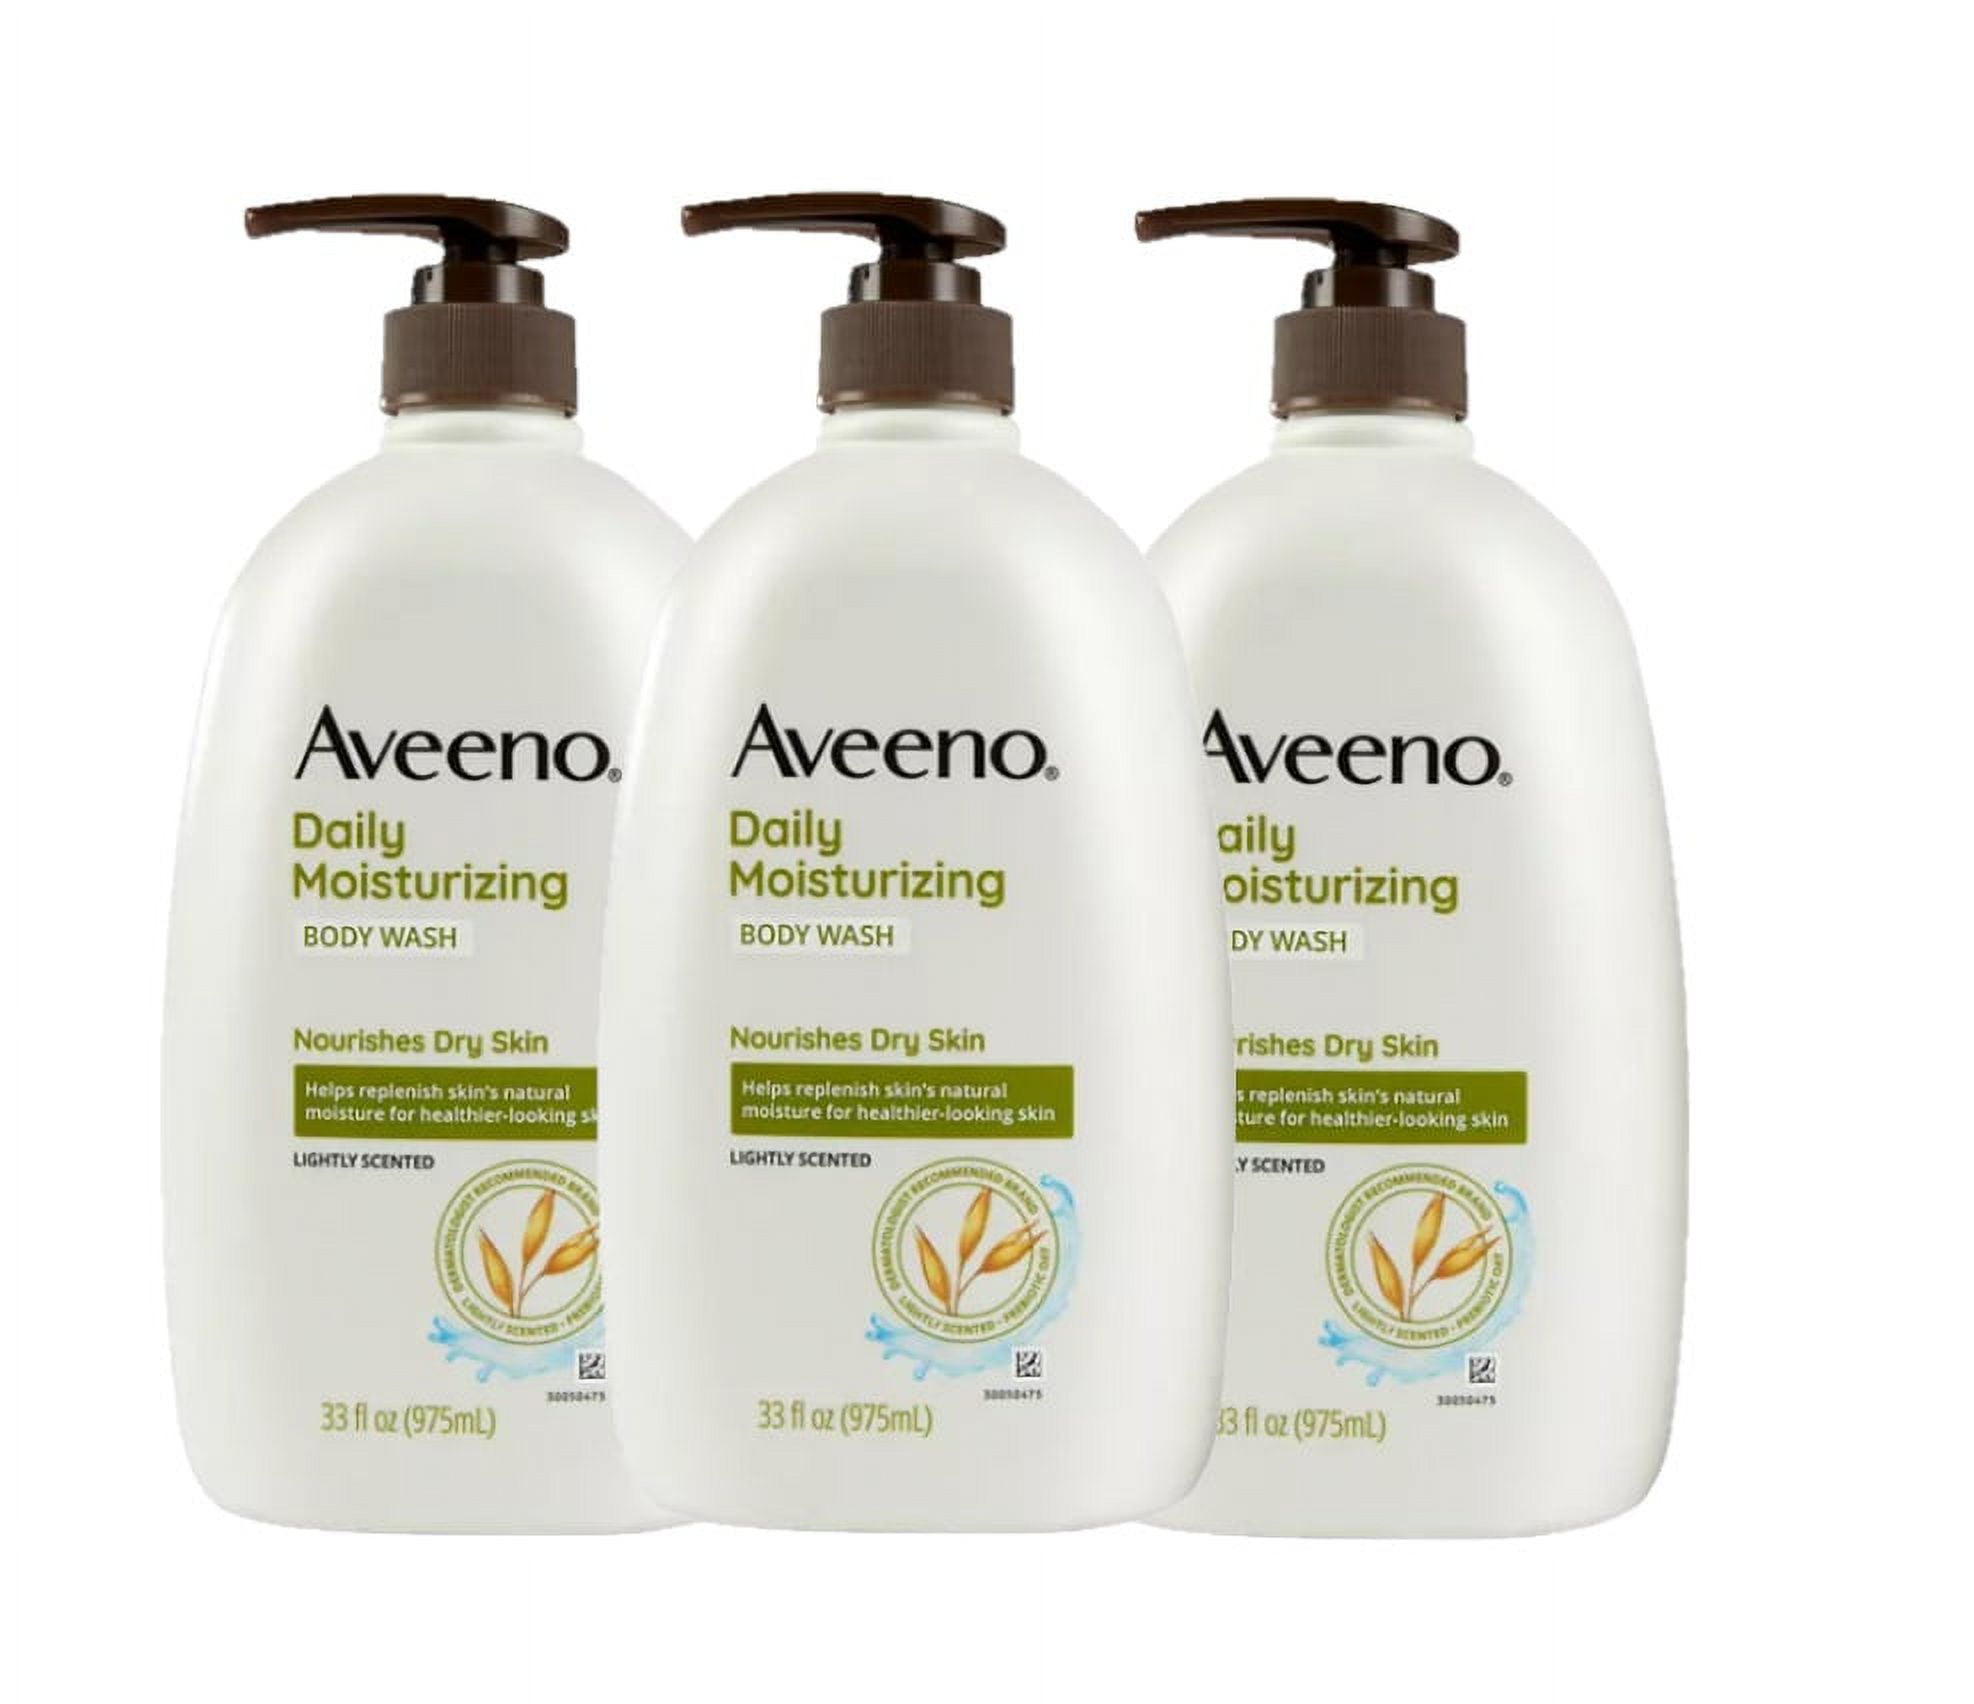 Aveeno Daily Moisturizing Body Wash (33 fl. oz., 2 pk.)